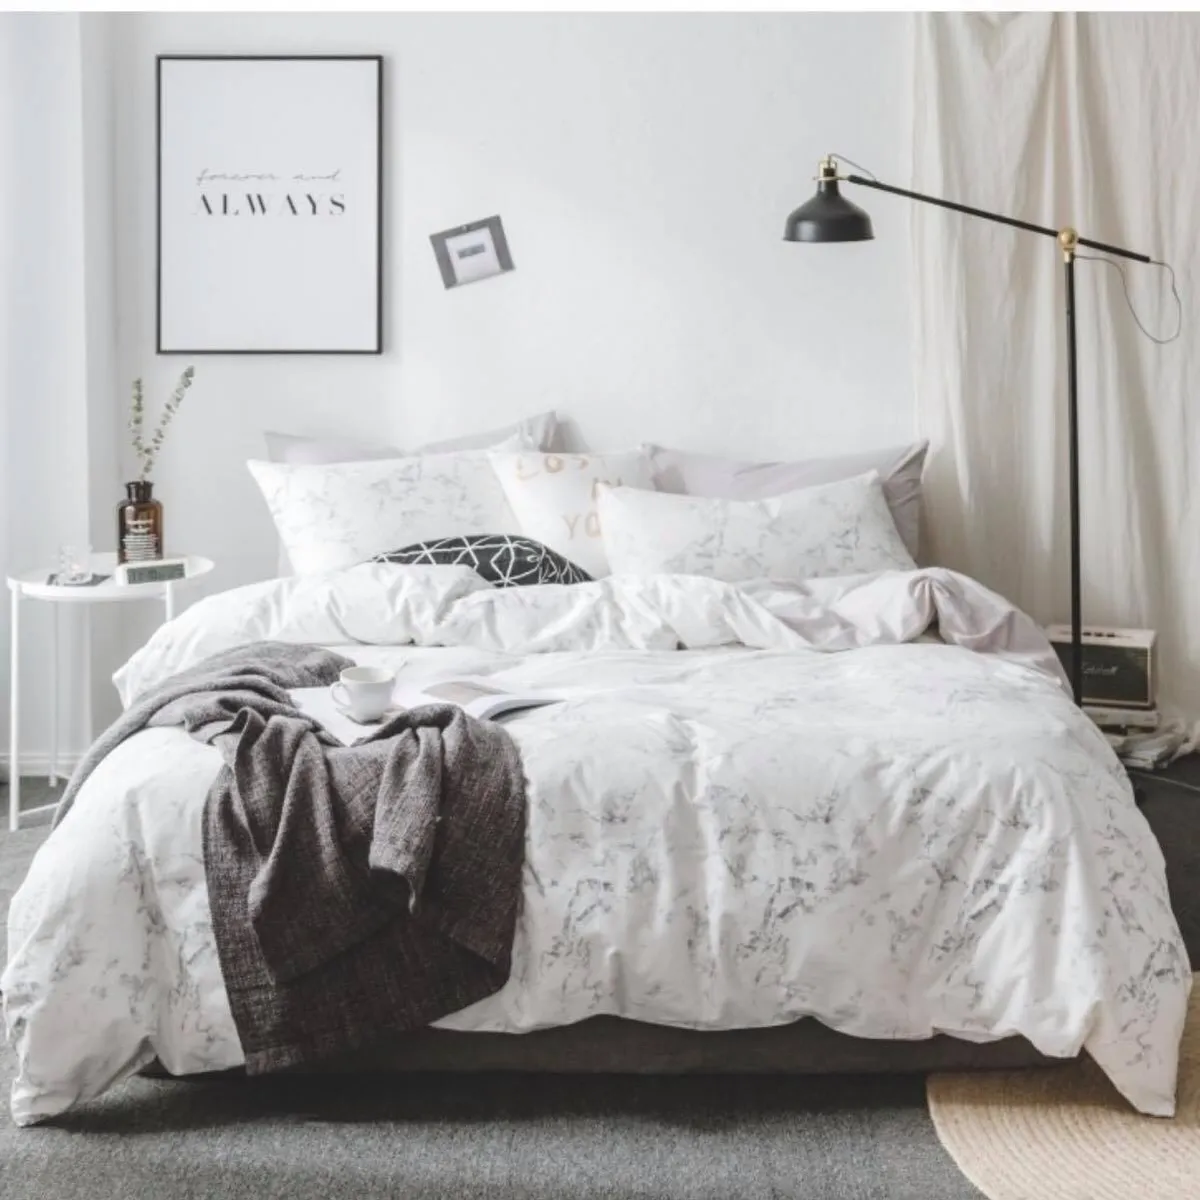 Fs 北歐大理石紋簡約風床單床包被套組 尺寸不同價格不同